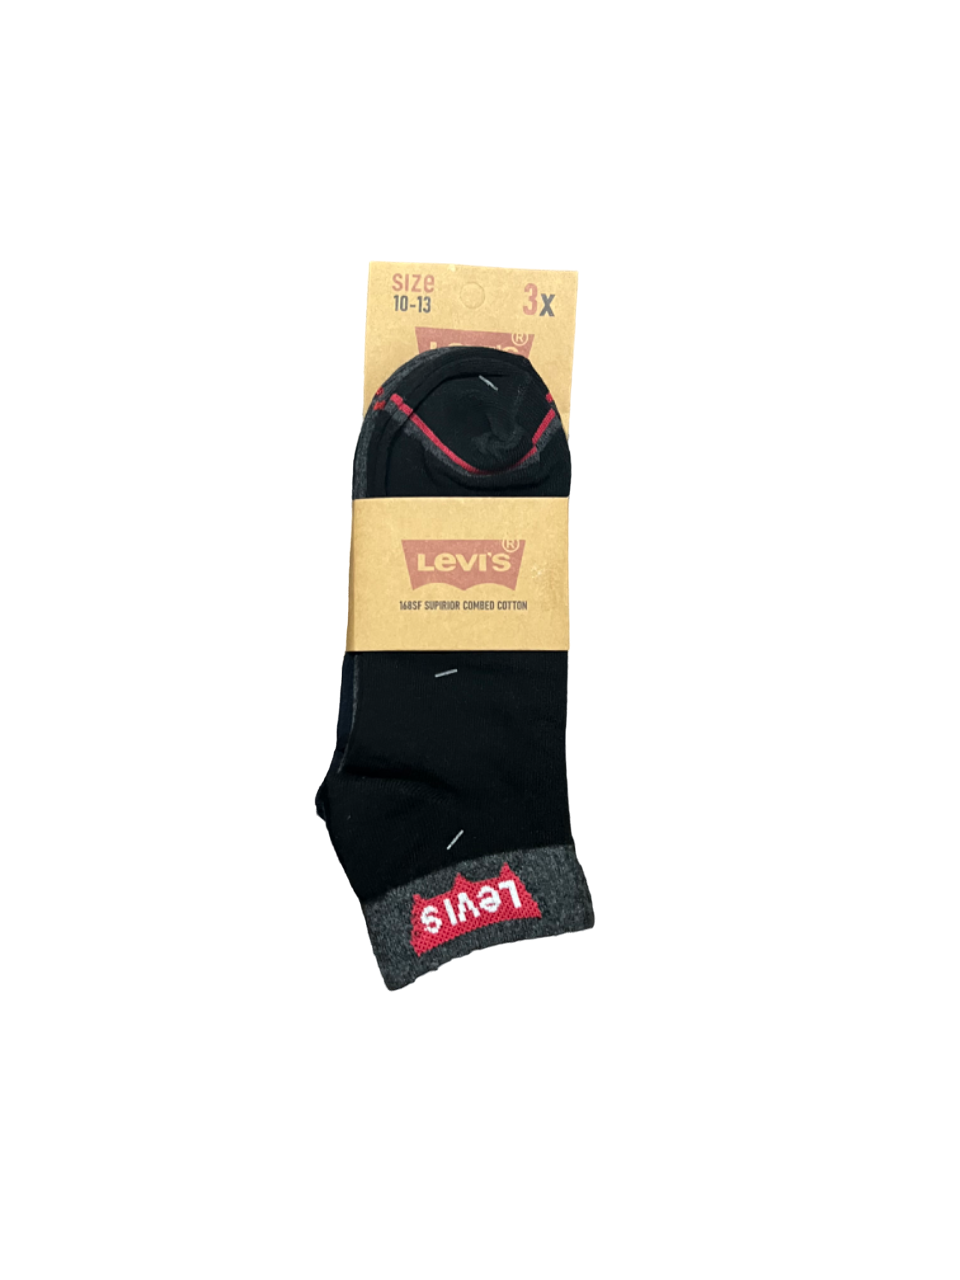 TMS Branded L-E-V-I-S Ankle Socks 15 (Pack Of 3)